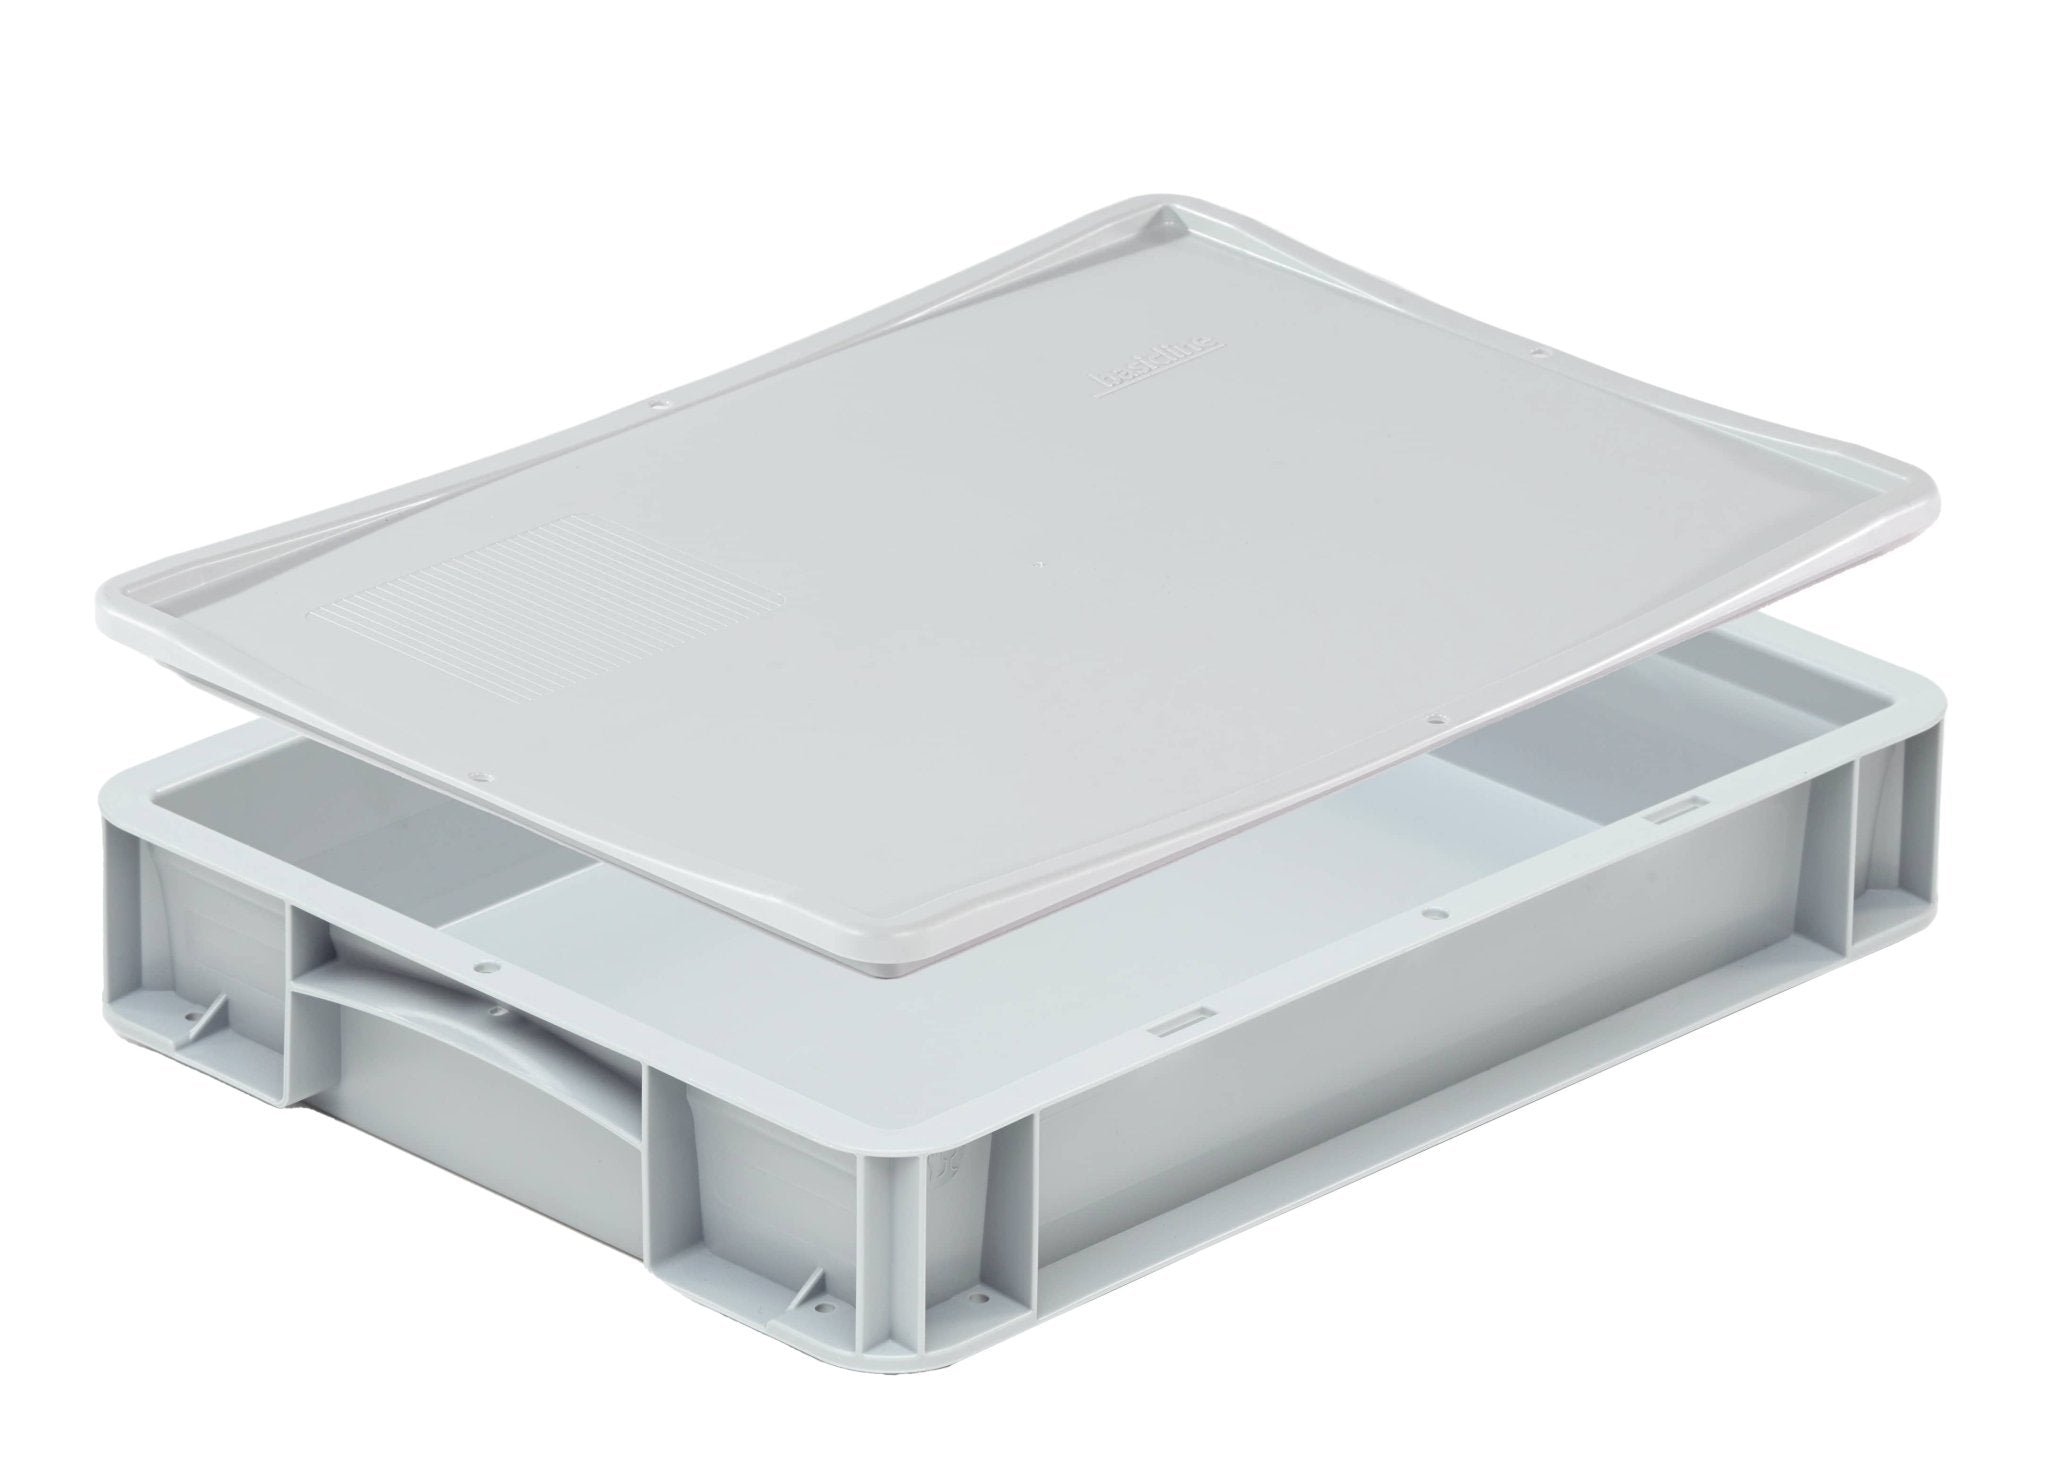 Pizzaballen-Box mit Deckel | 40 x 30 x 7 cm - Wundermix GmbH